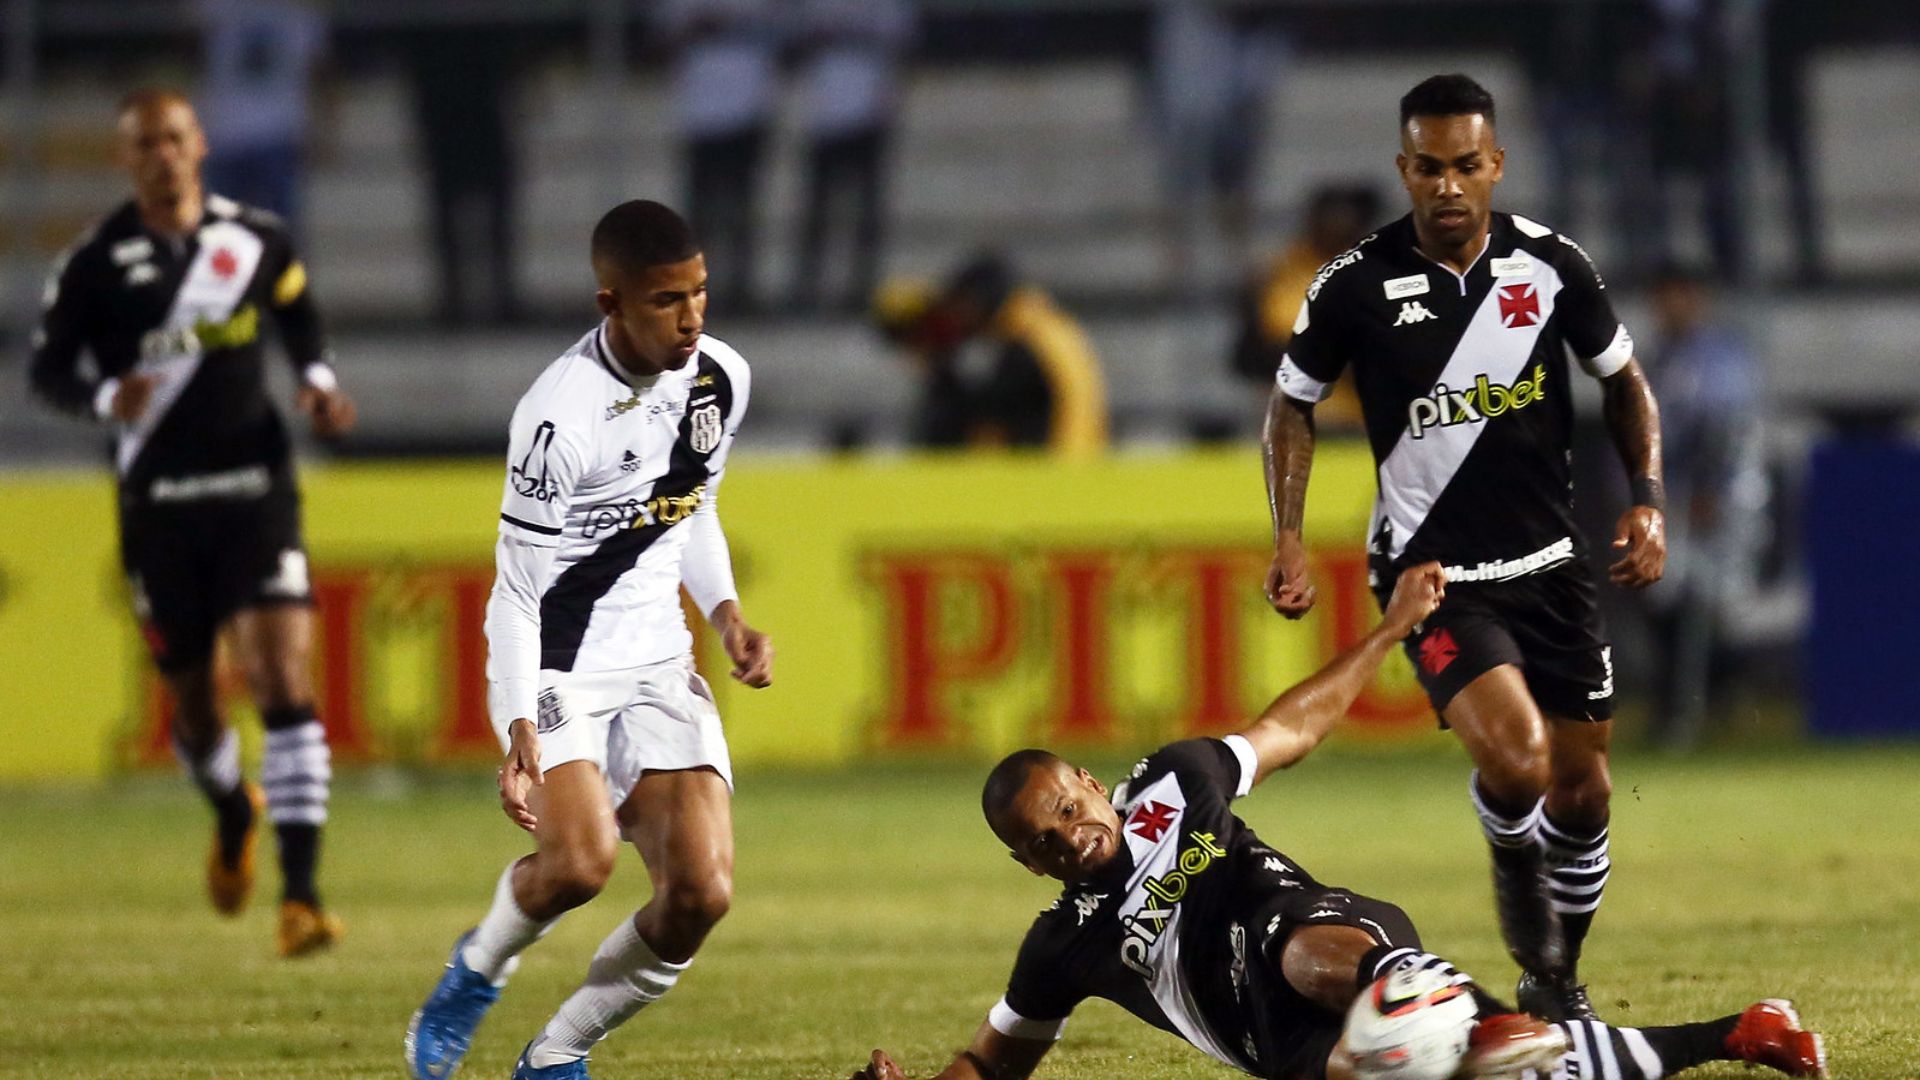 Jogadores do Vasco disputam a bola no jogo contra a Ponte Preta